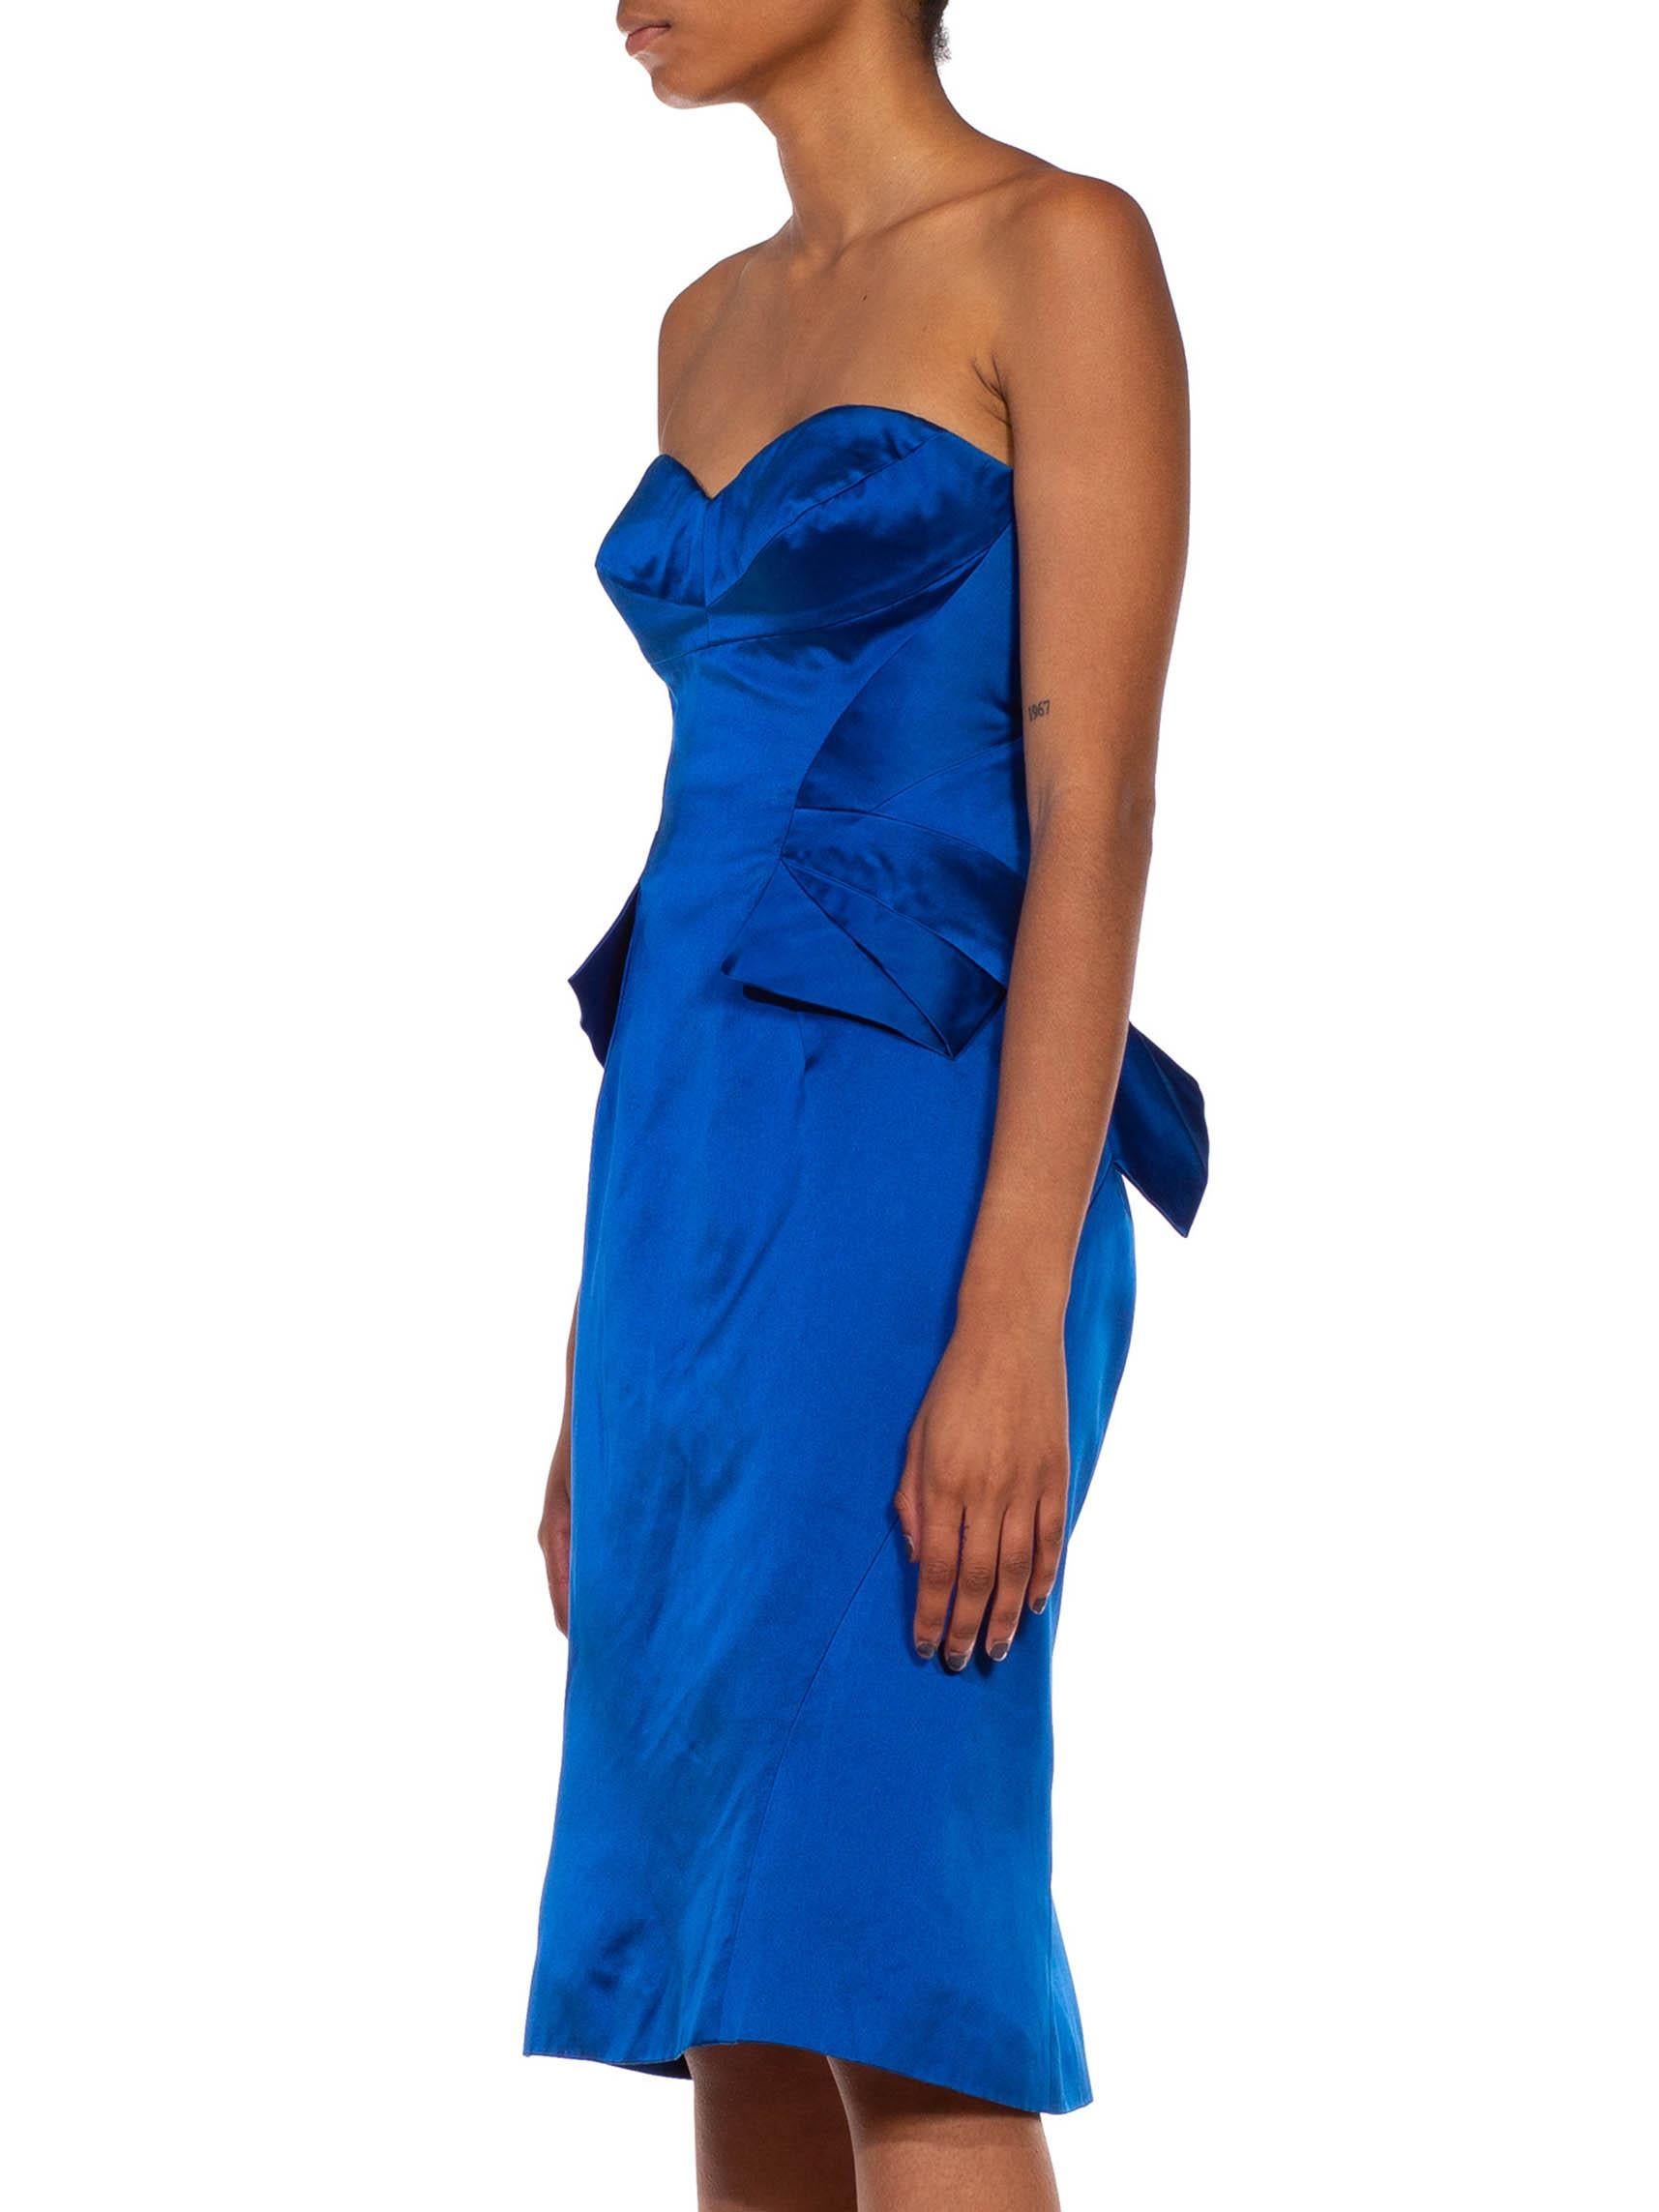 Schön gemacht mit einem klassischen Dior Haute Couture-Stil internen Korselett.  2000S ZAC POSEN Elektrisch Blau  Trägerloses Cocktailkleid aus Seide Duchess Satin 